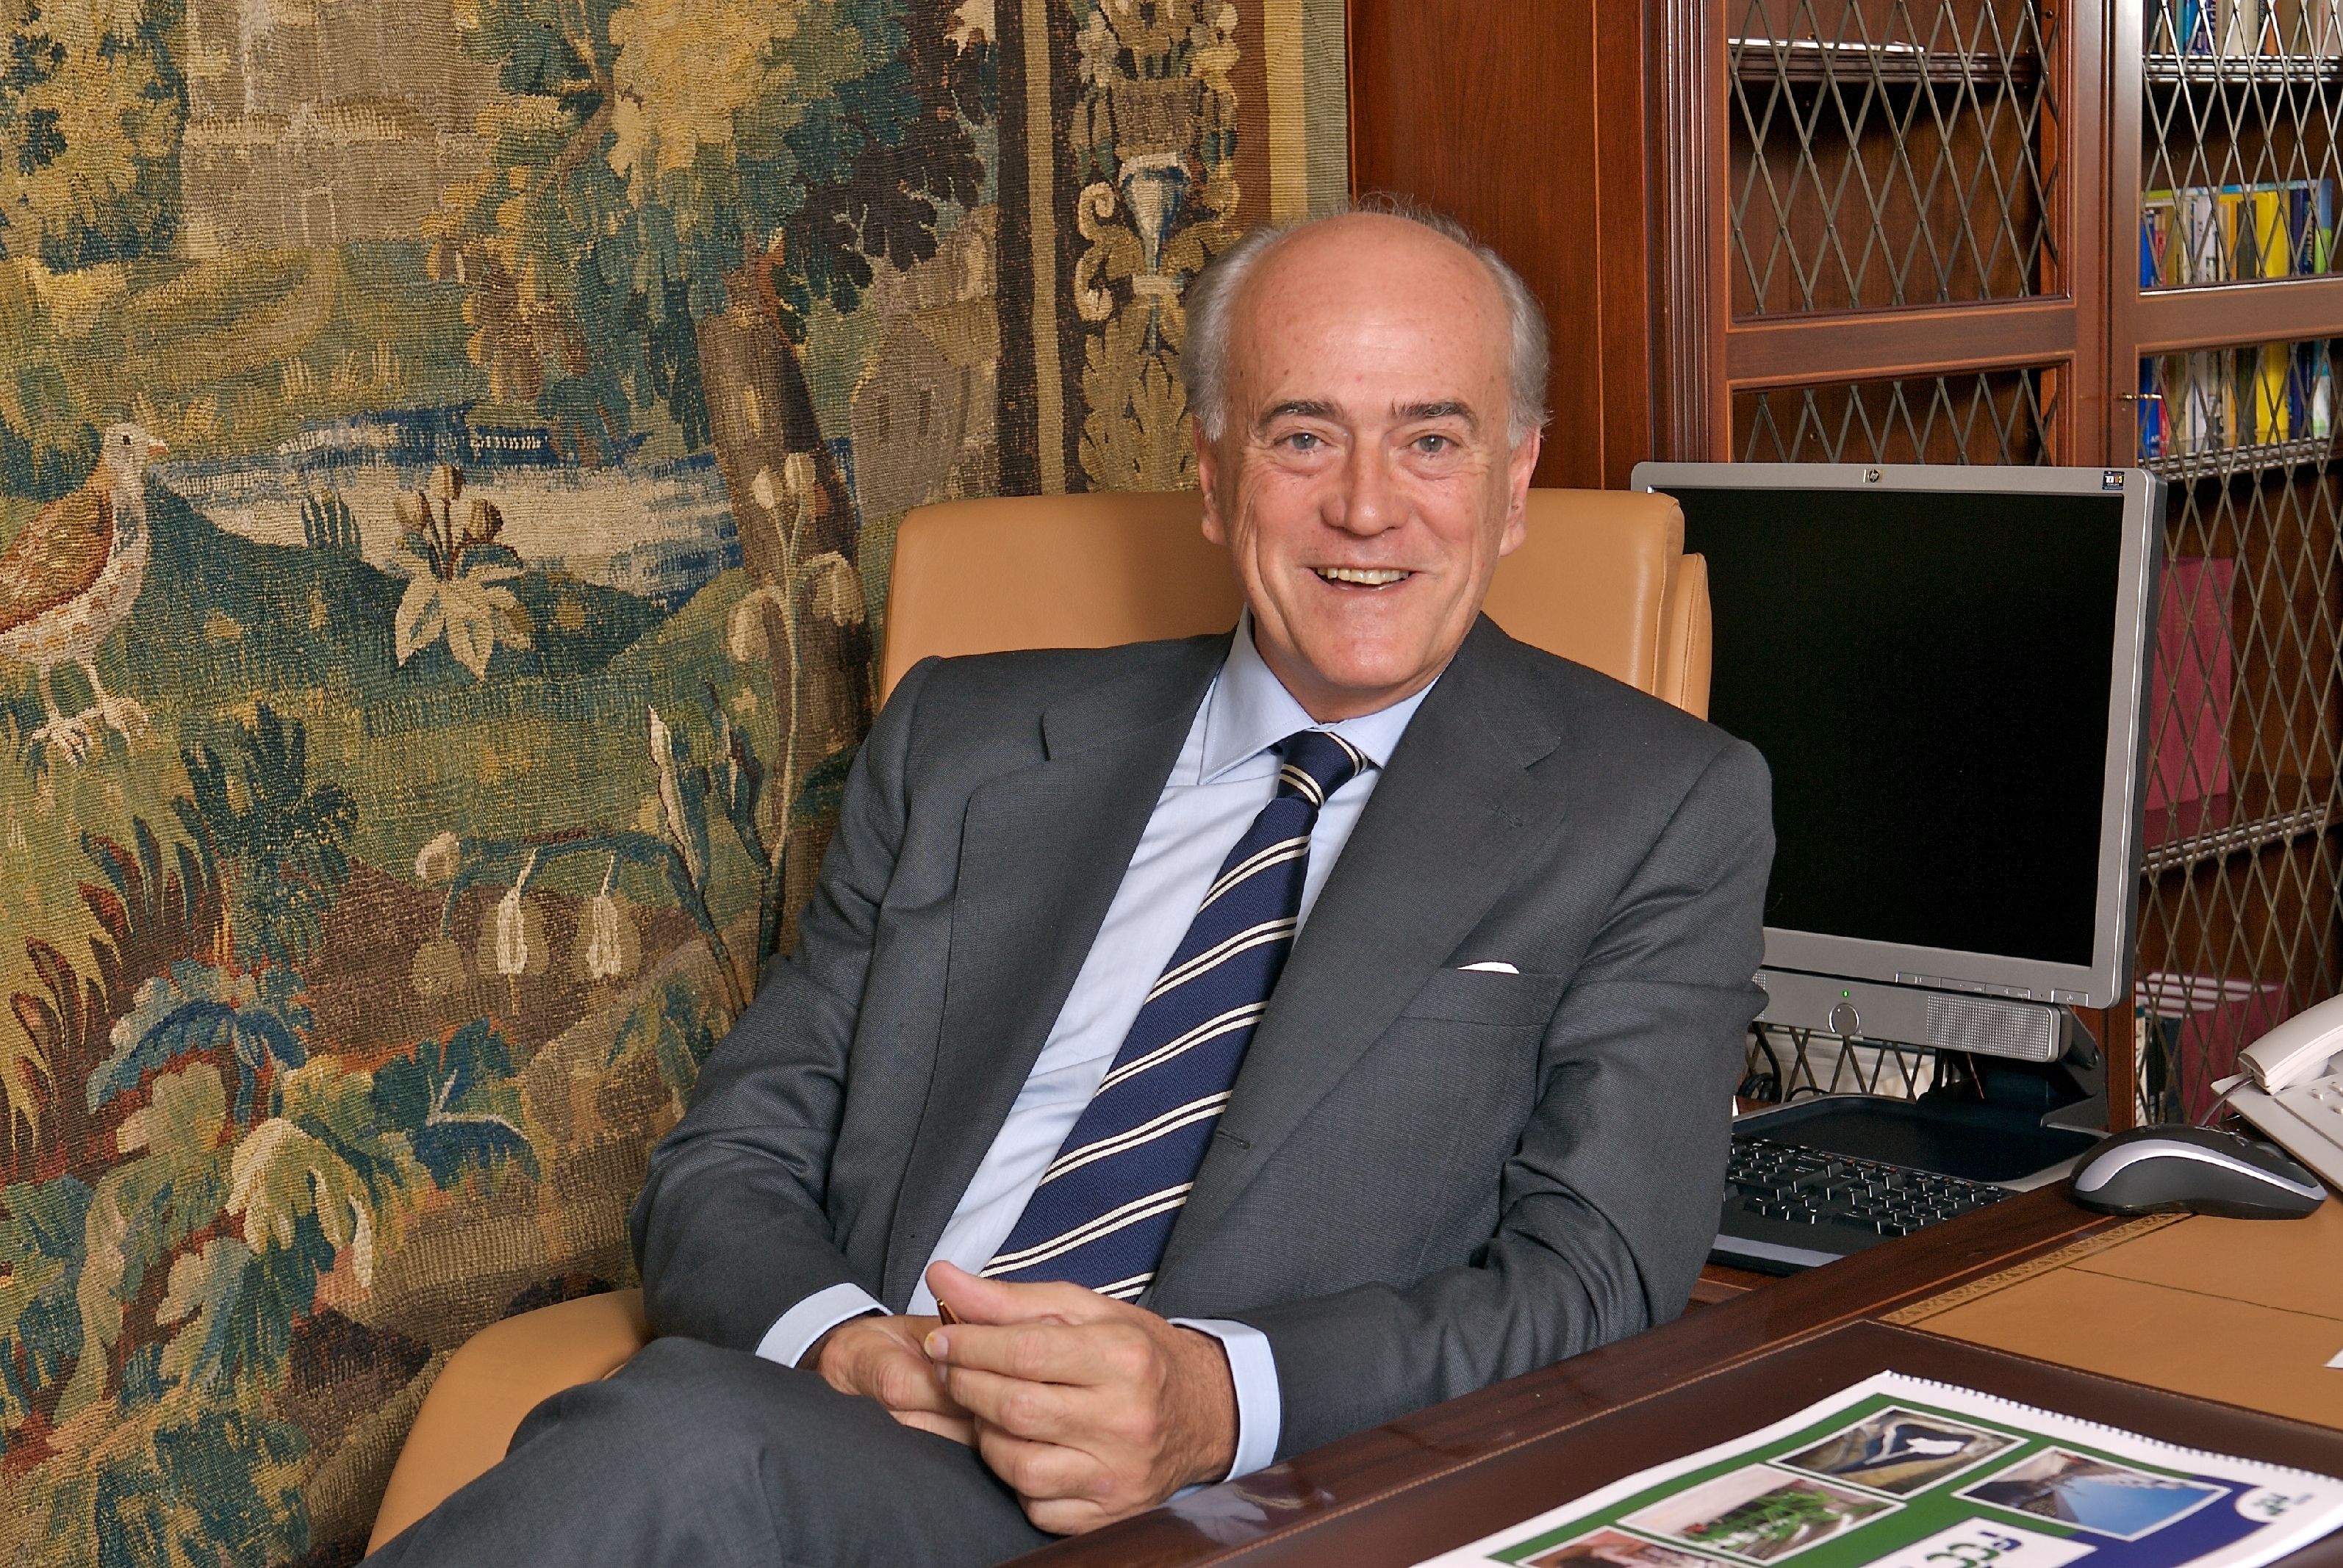 Baldomero Falcones, Chairman and CEO of FCC